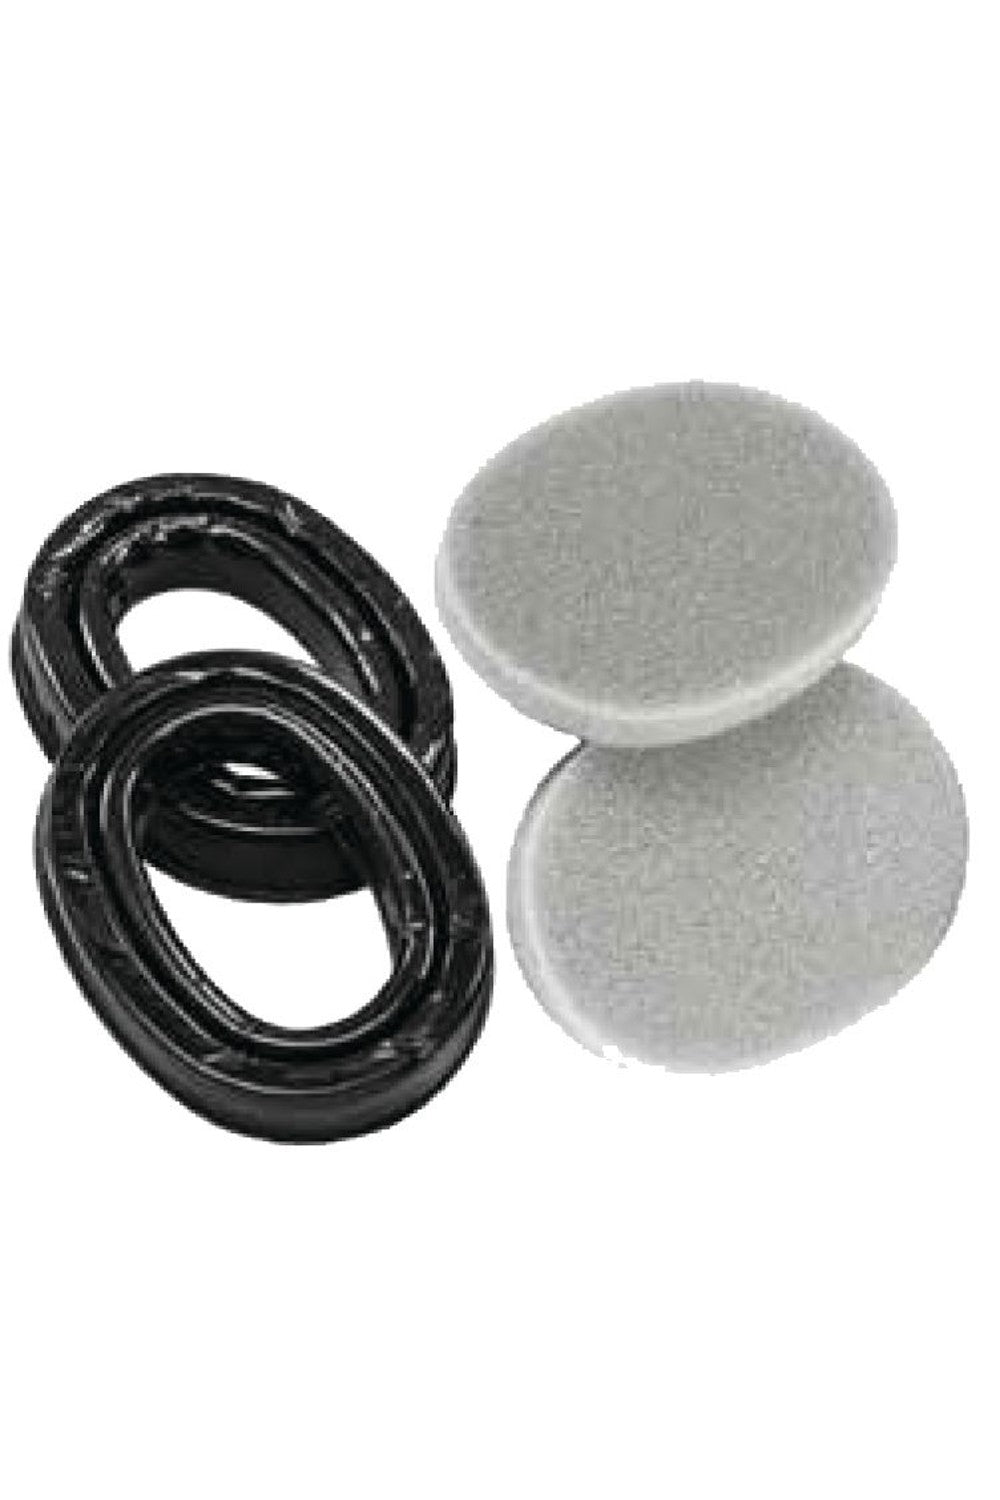 Peltor 3M Gel Sealing Ring Hygiene Kit for SportTac